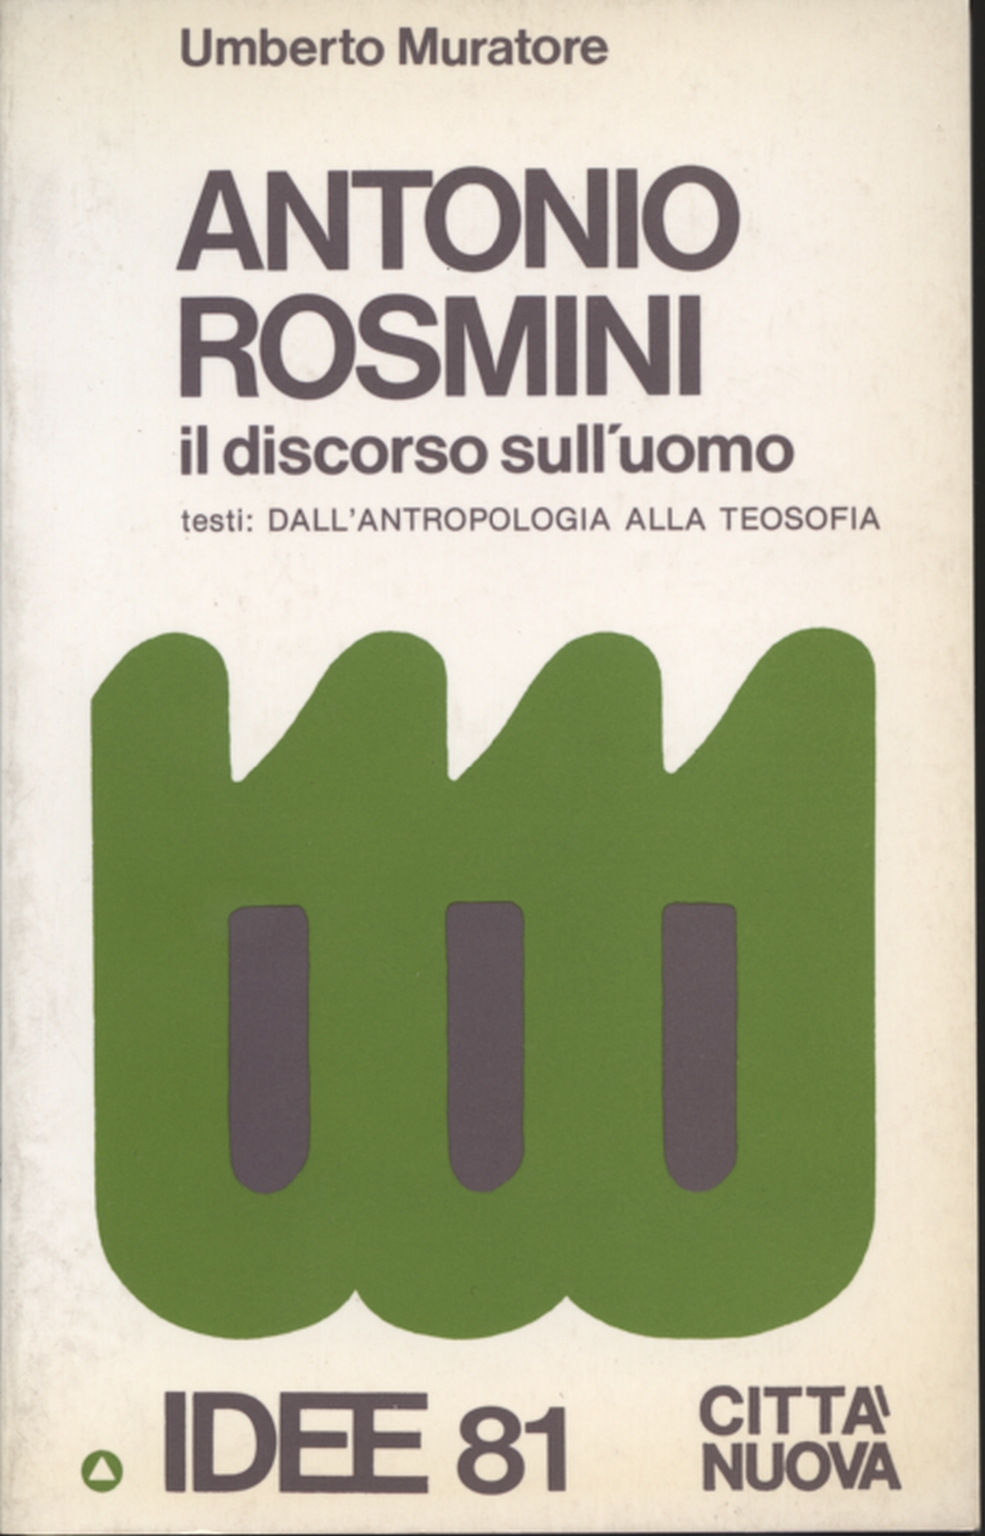 Antonio Rosmini, Umberto Muratore